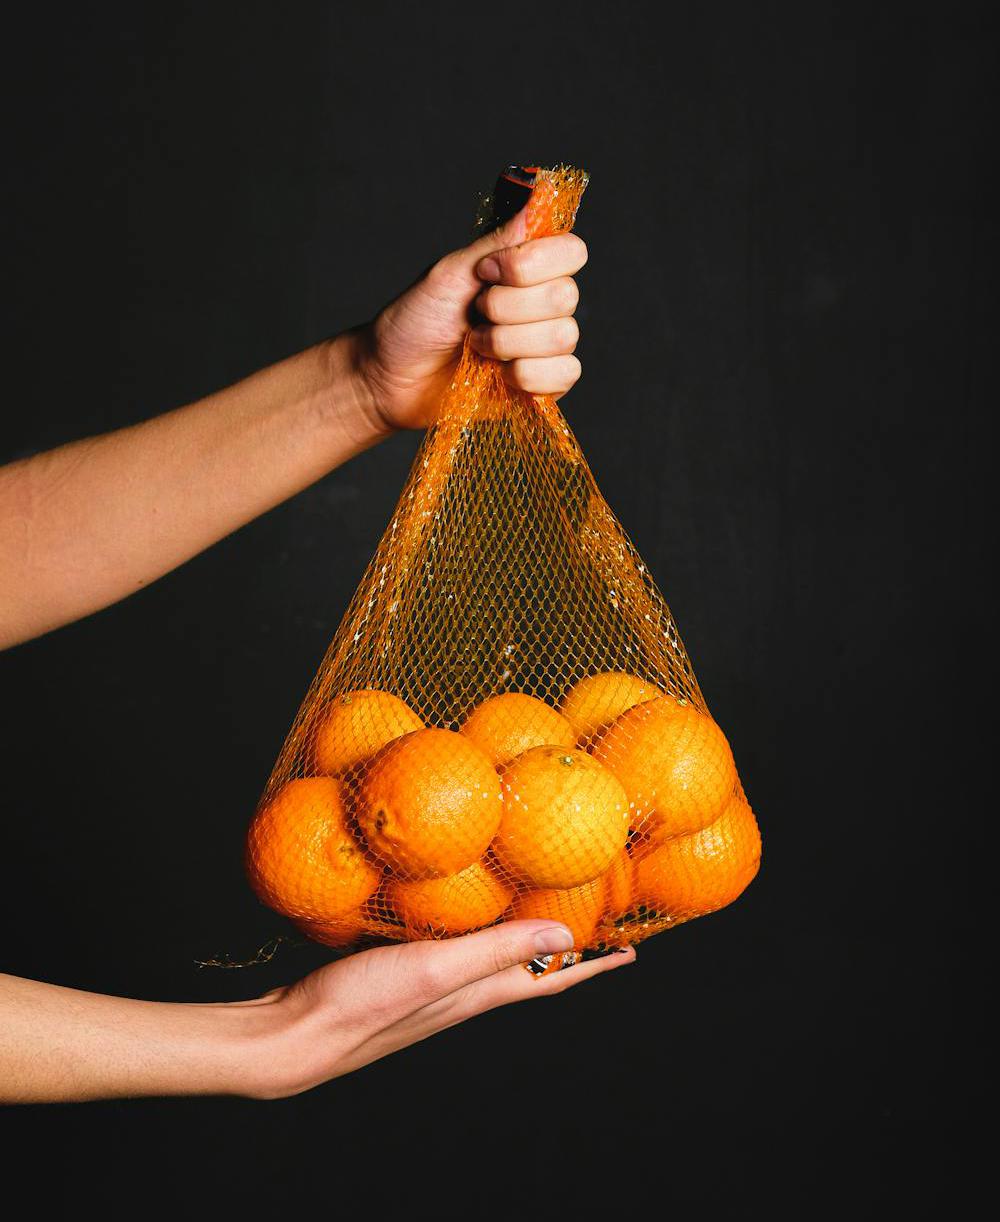 По содержанию витаминов и минералов сок апельсина не сильно уступает цельному фрукту